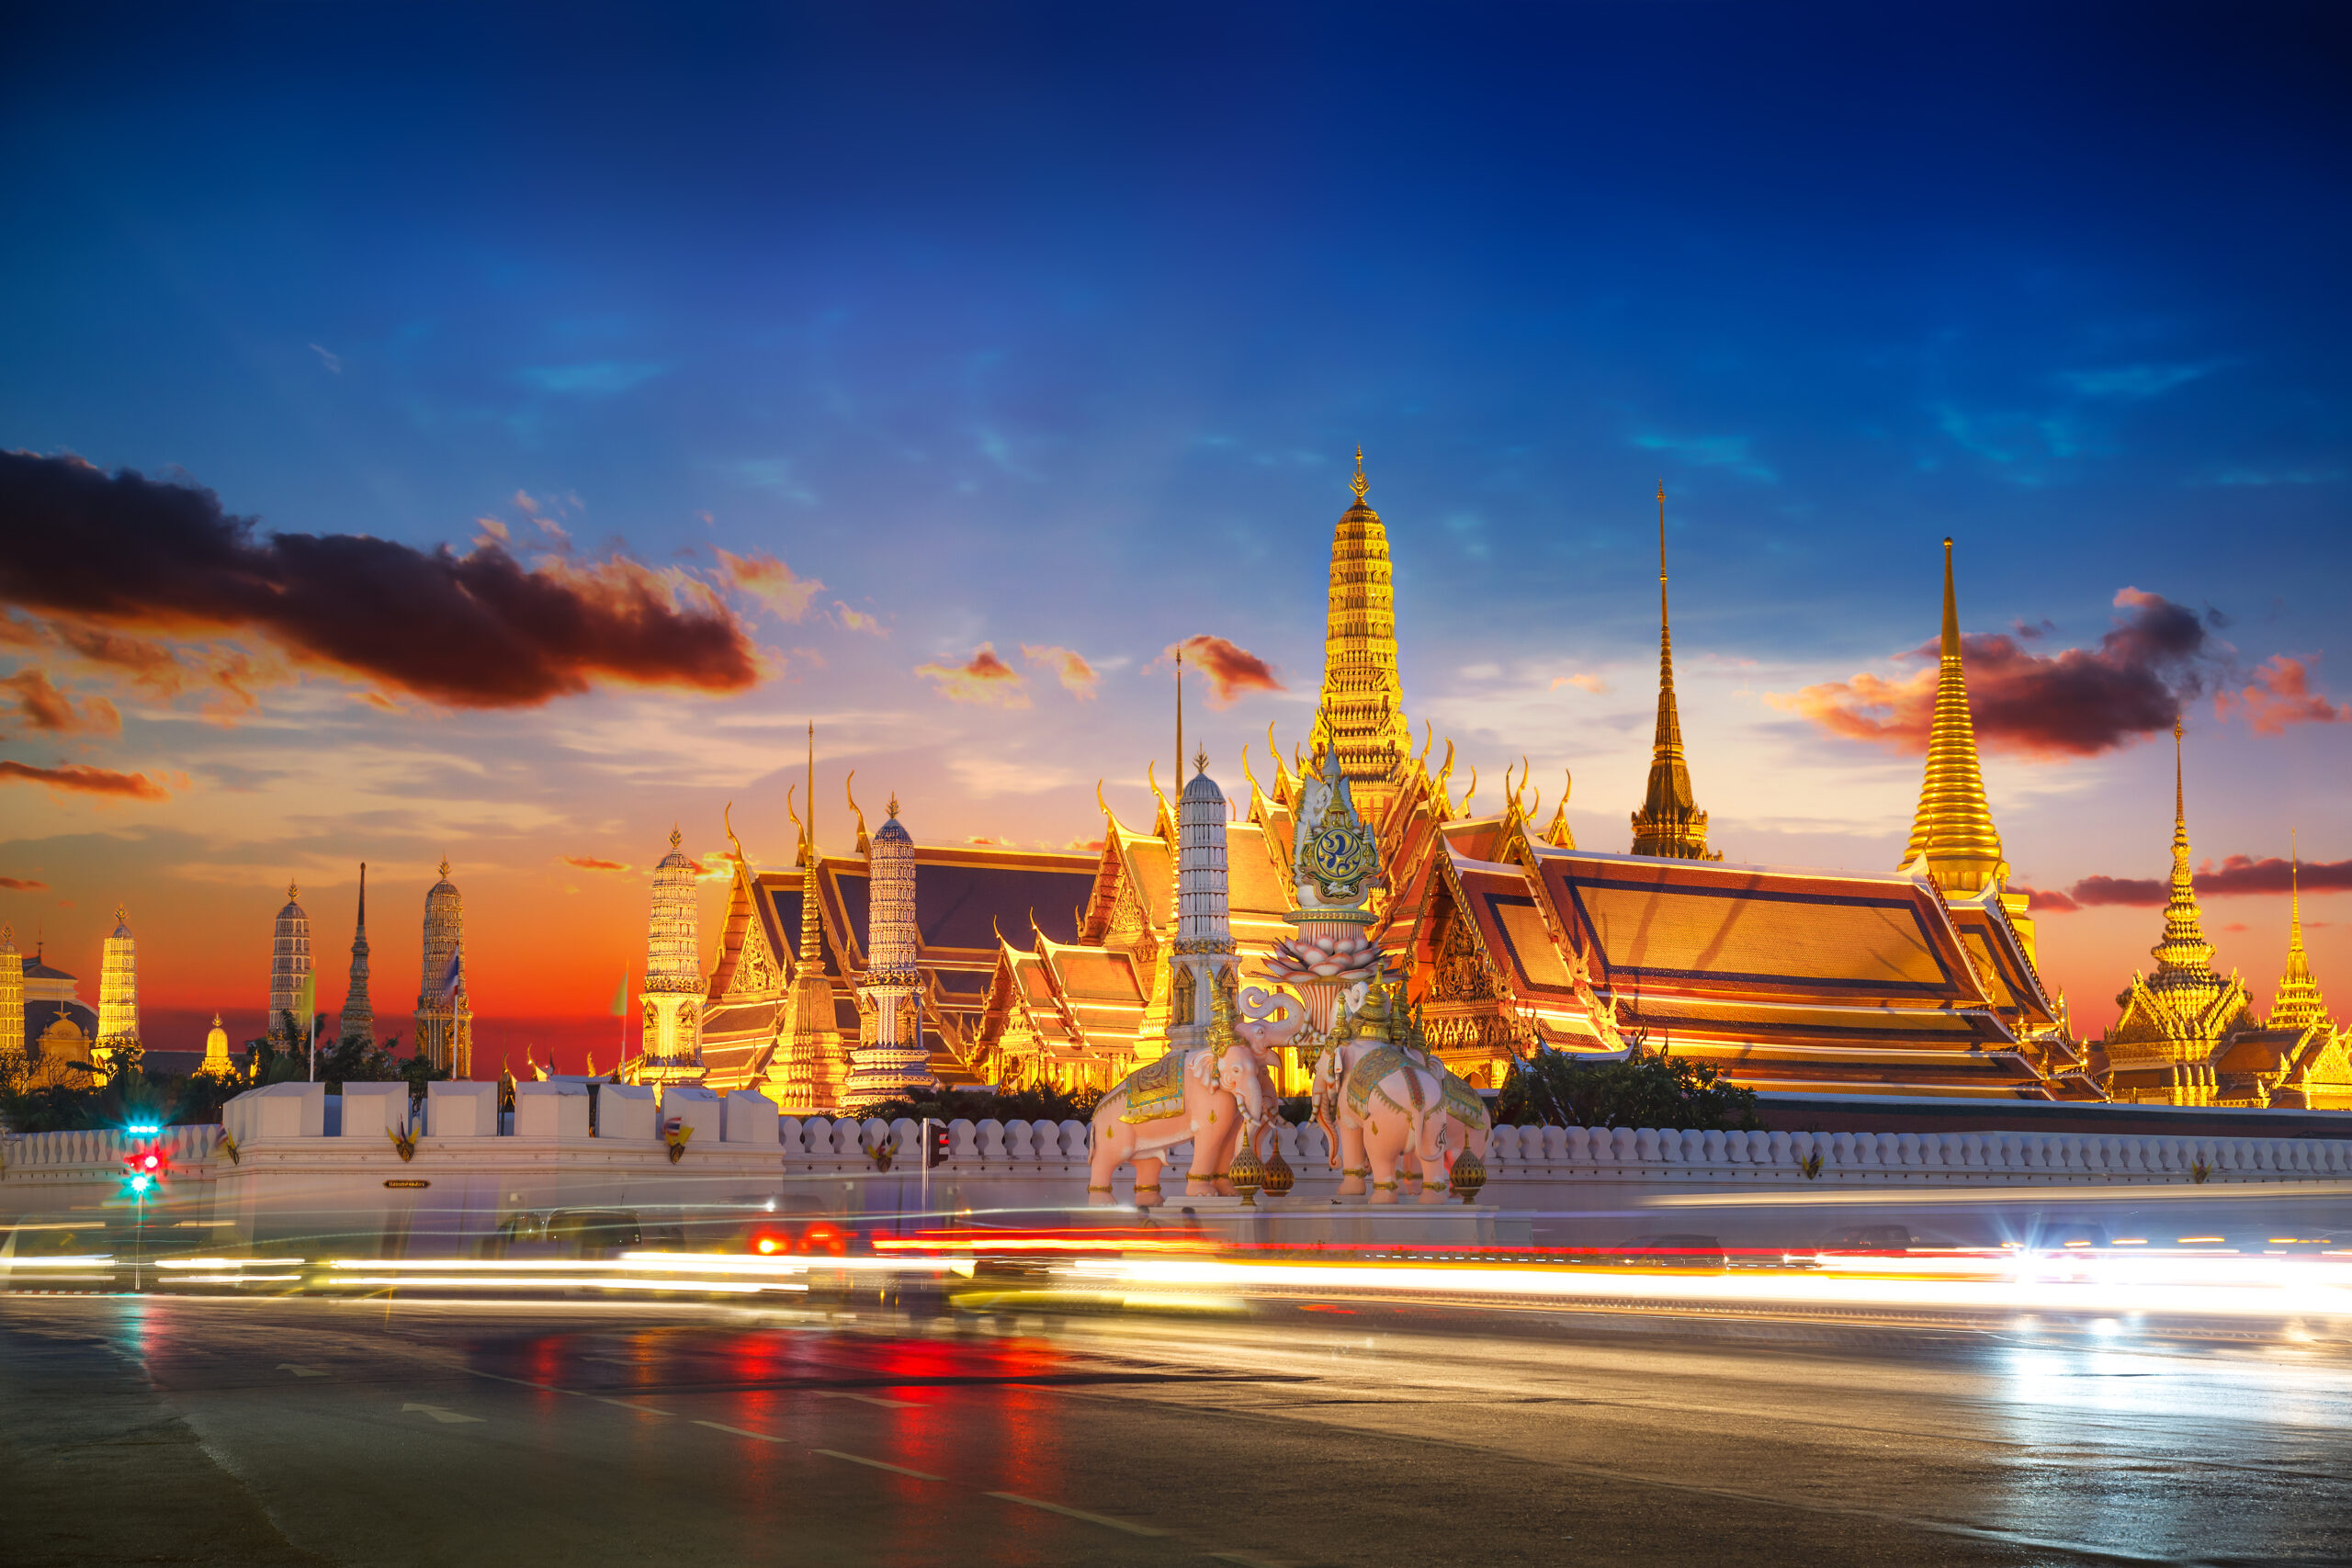 Wat,Phra,Kaew,-,The,Temple,Of,Emerald,Buddha,In